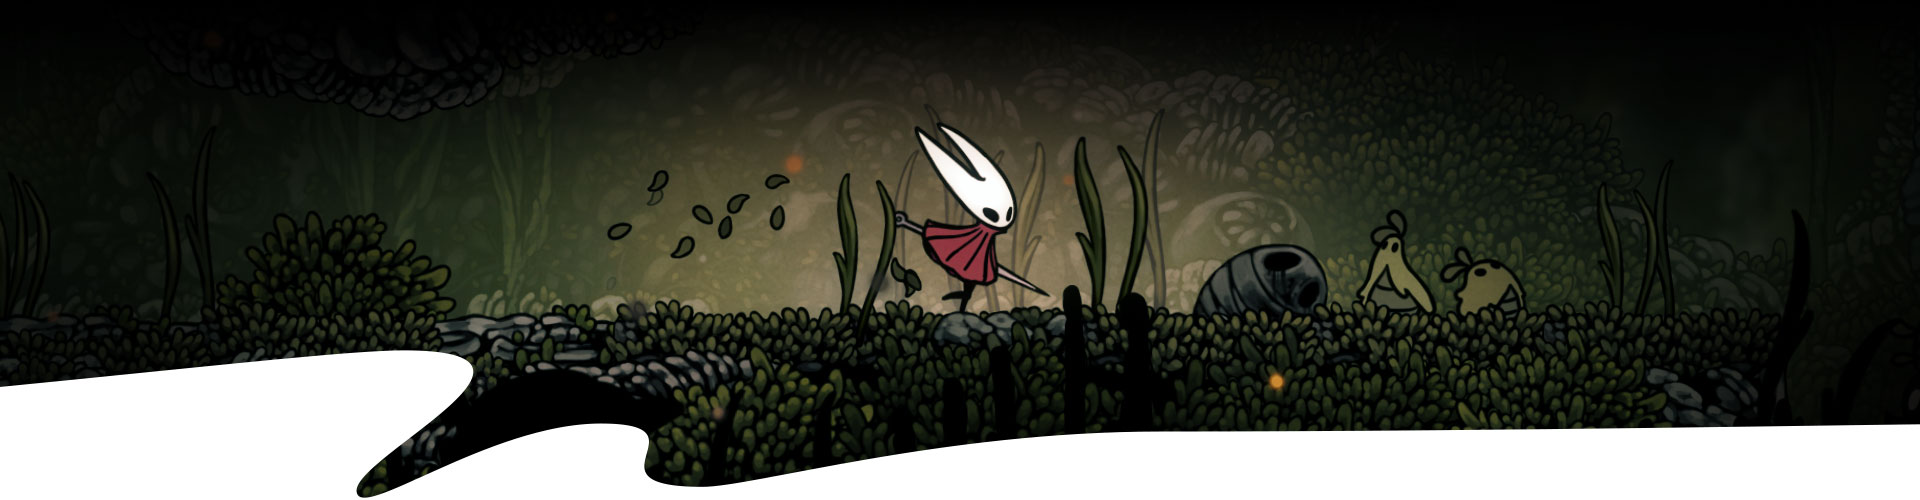 Un personnage marche dans une forêt balayée par le vent. 